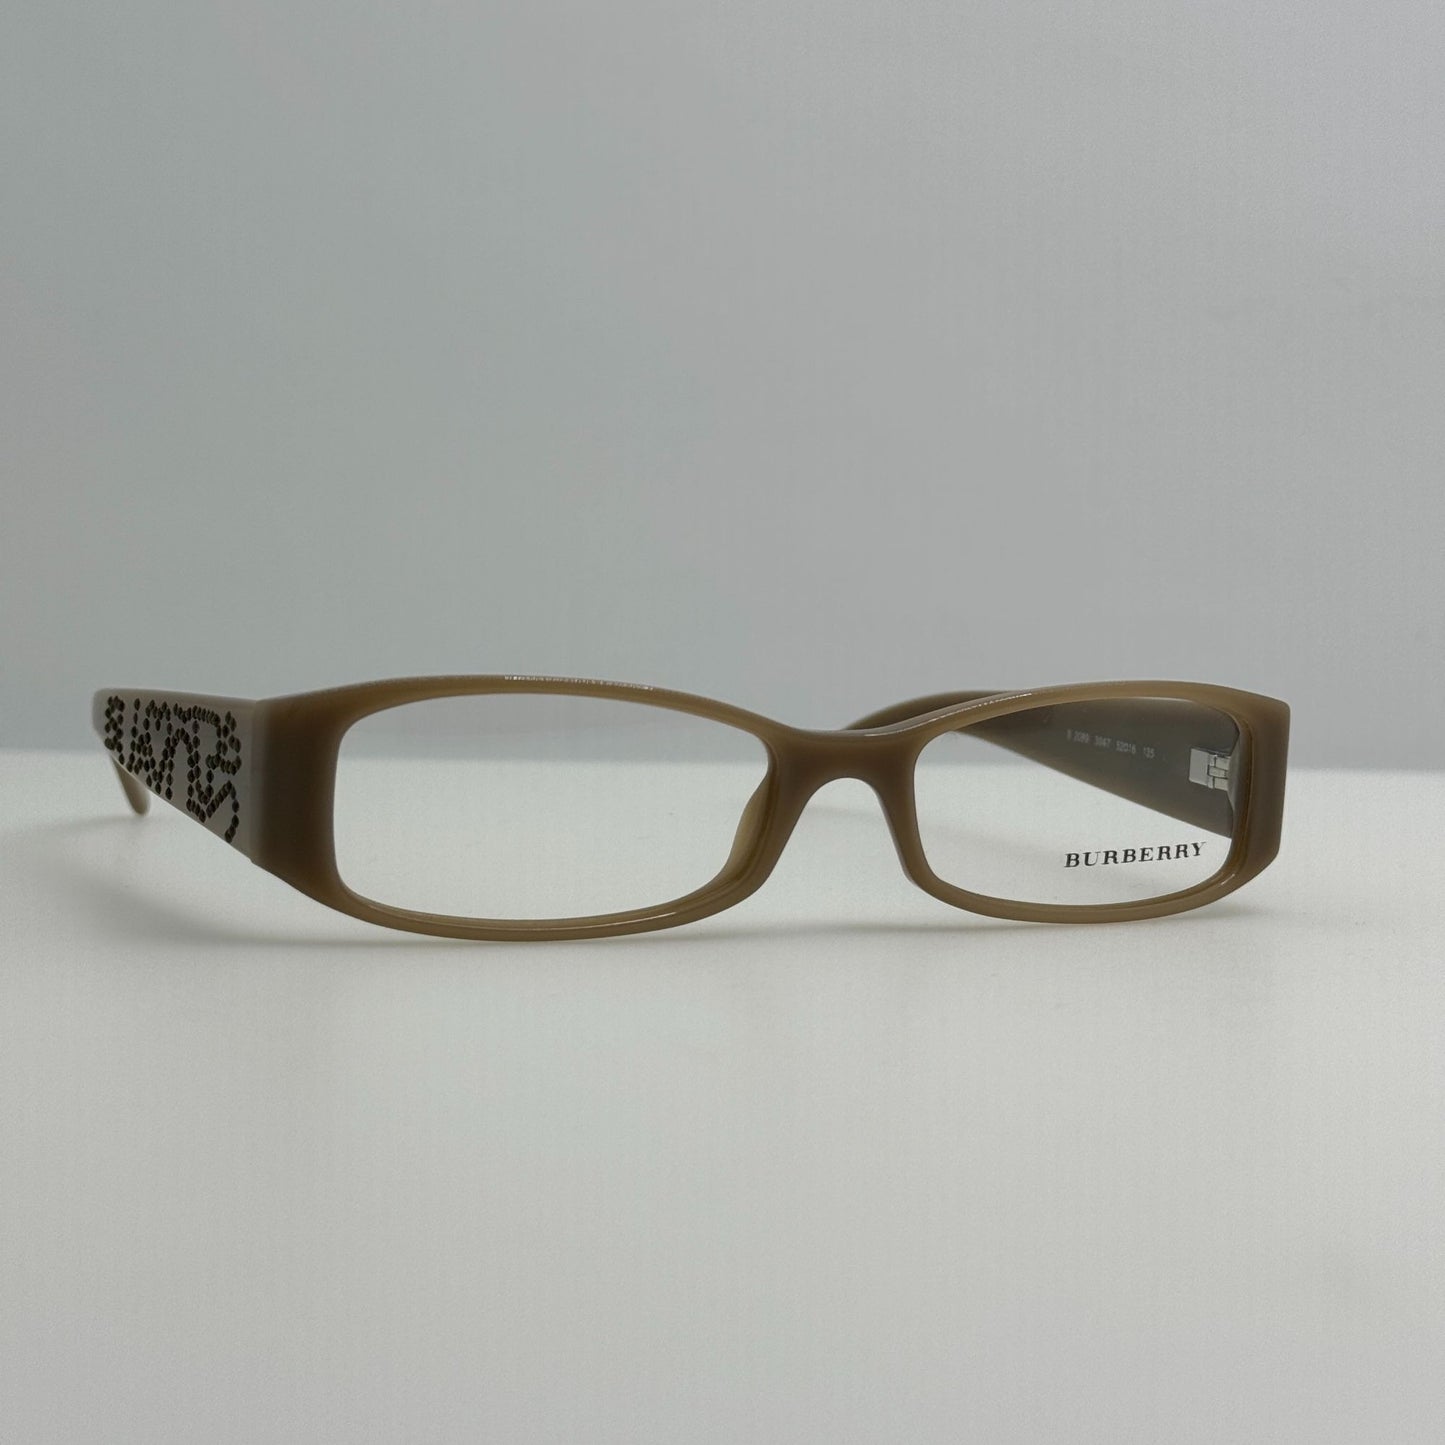 Burberry Eyeglasses Eye Glasses Frames B 2089 3047 Italy 52-16-135